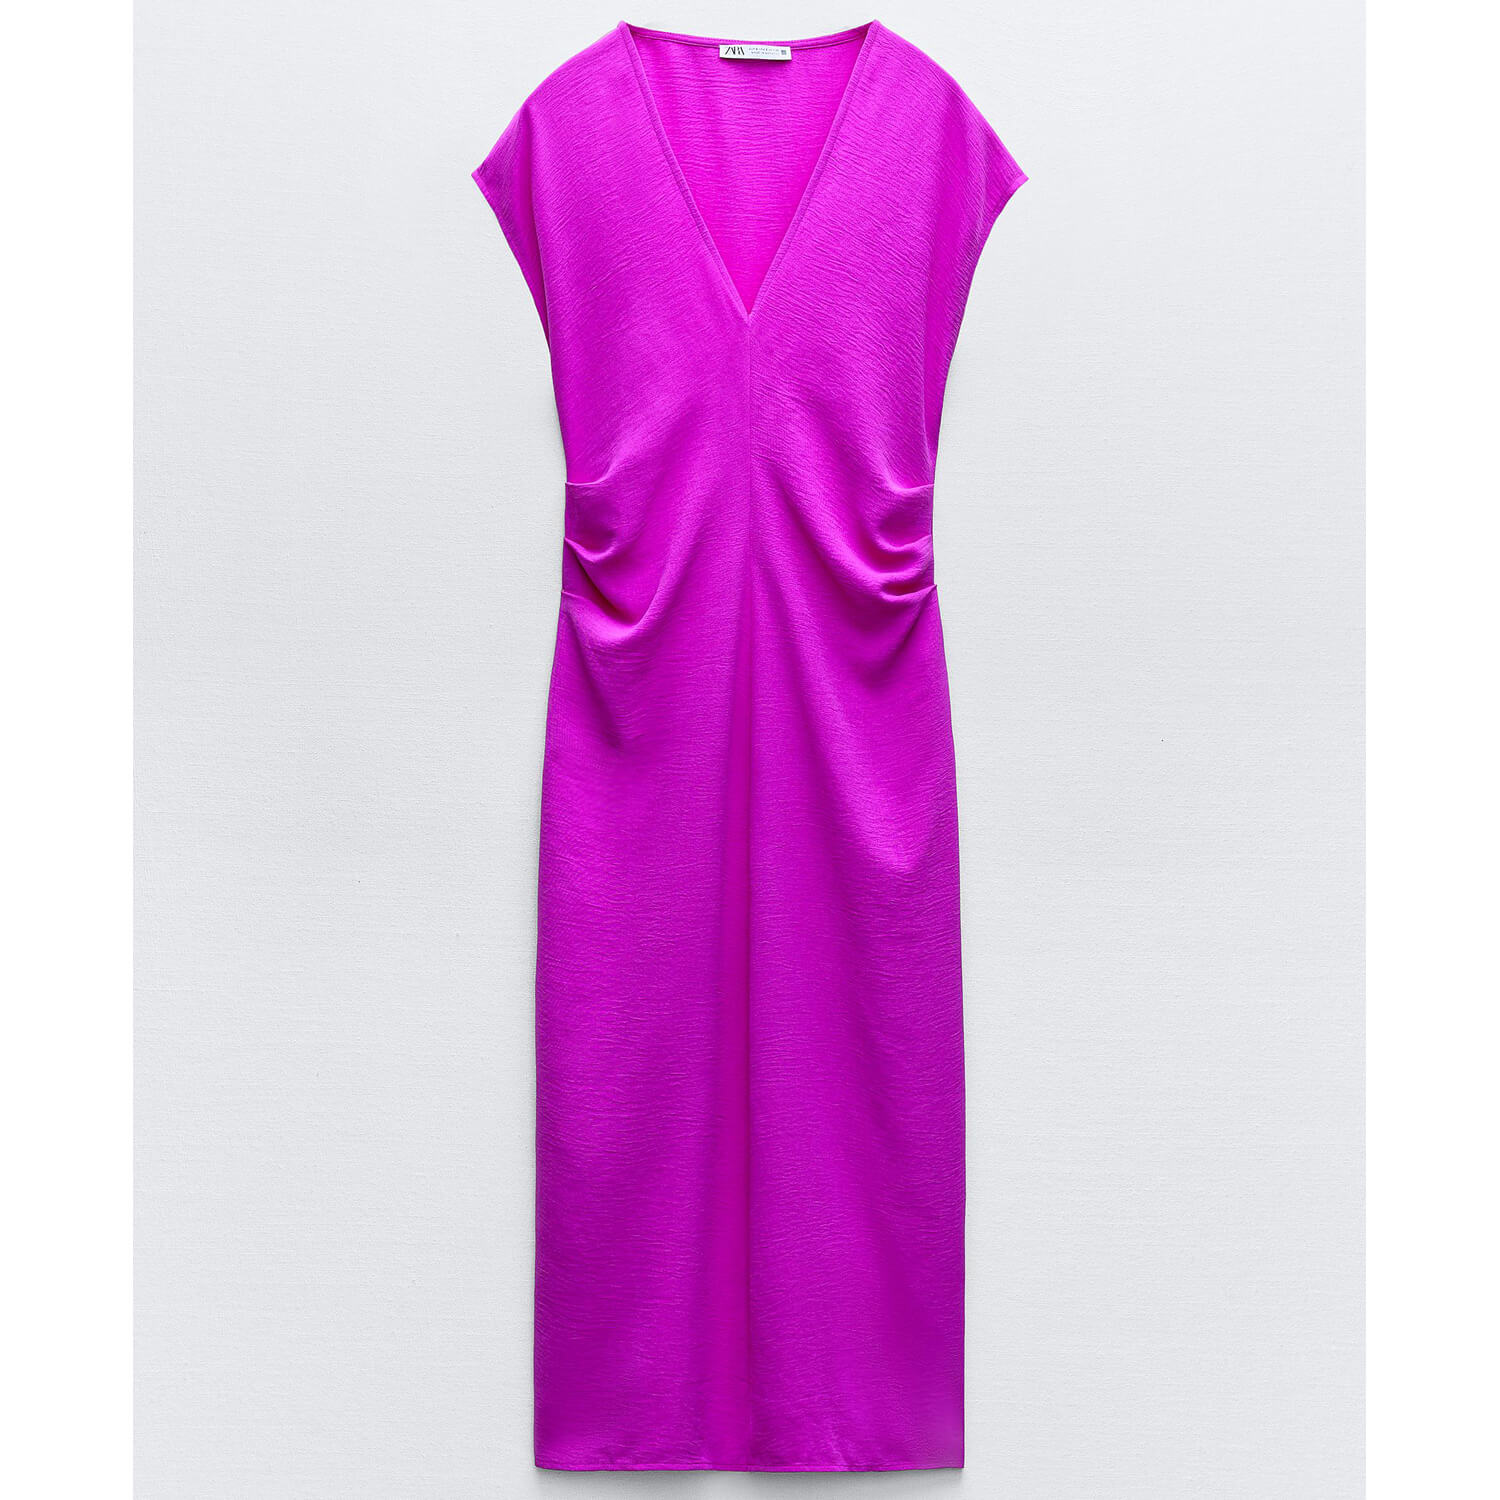 Платье Zara Flowing With Gathering, фуксия пуловер в клетку без рукавов v образный вырез m розовый